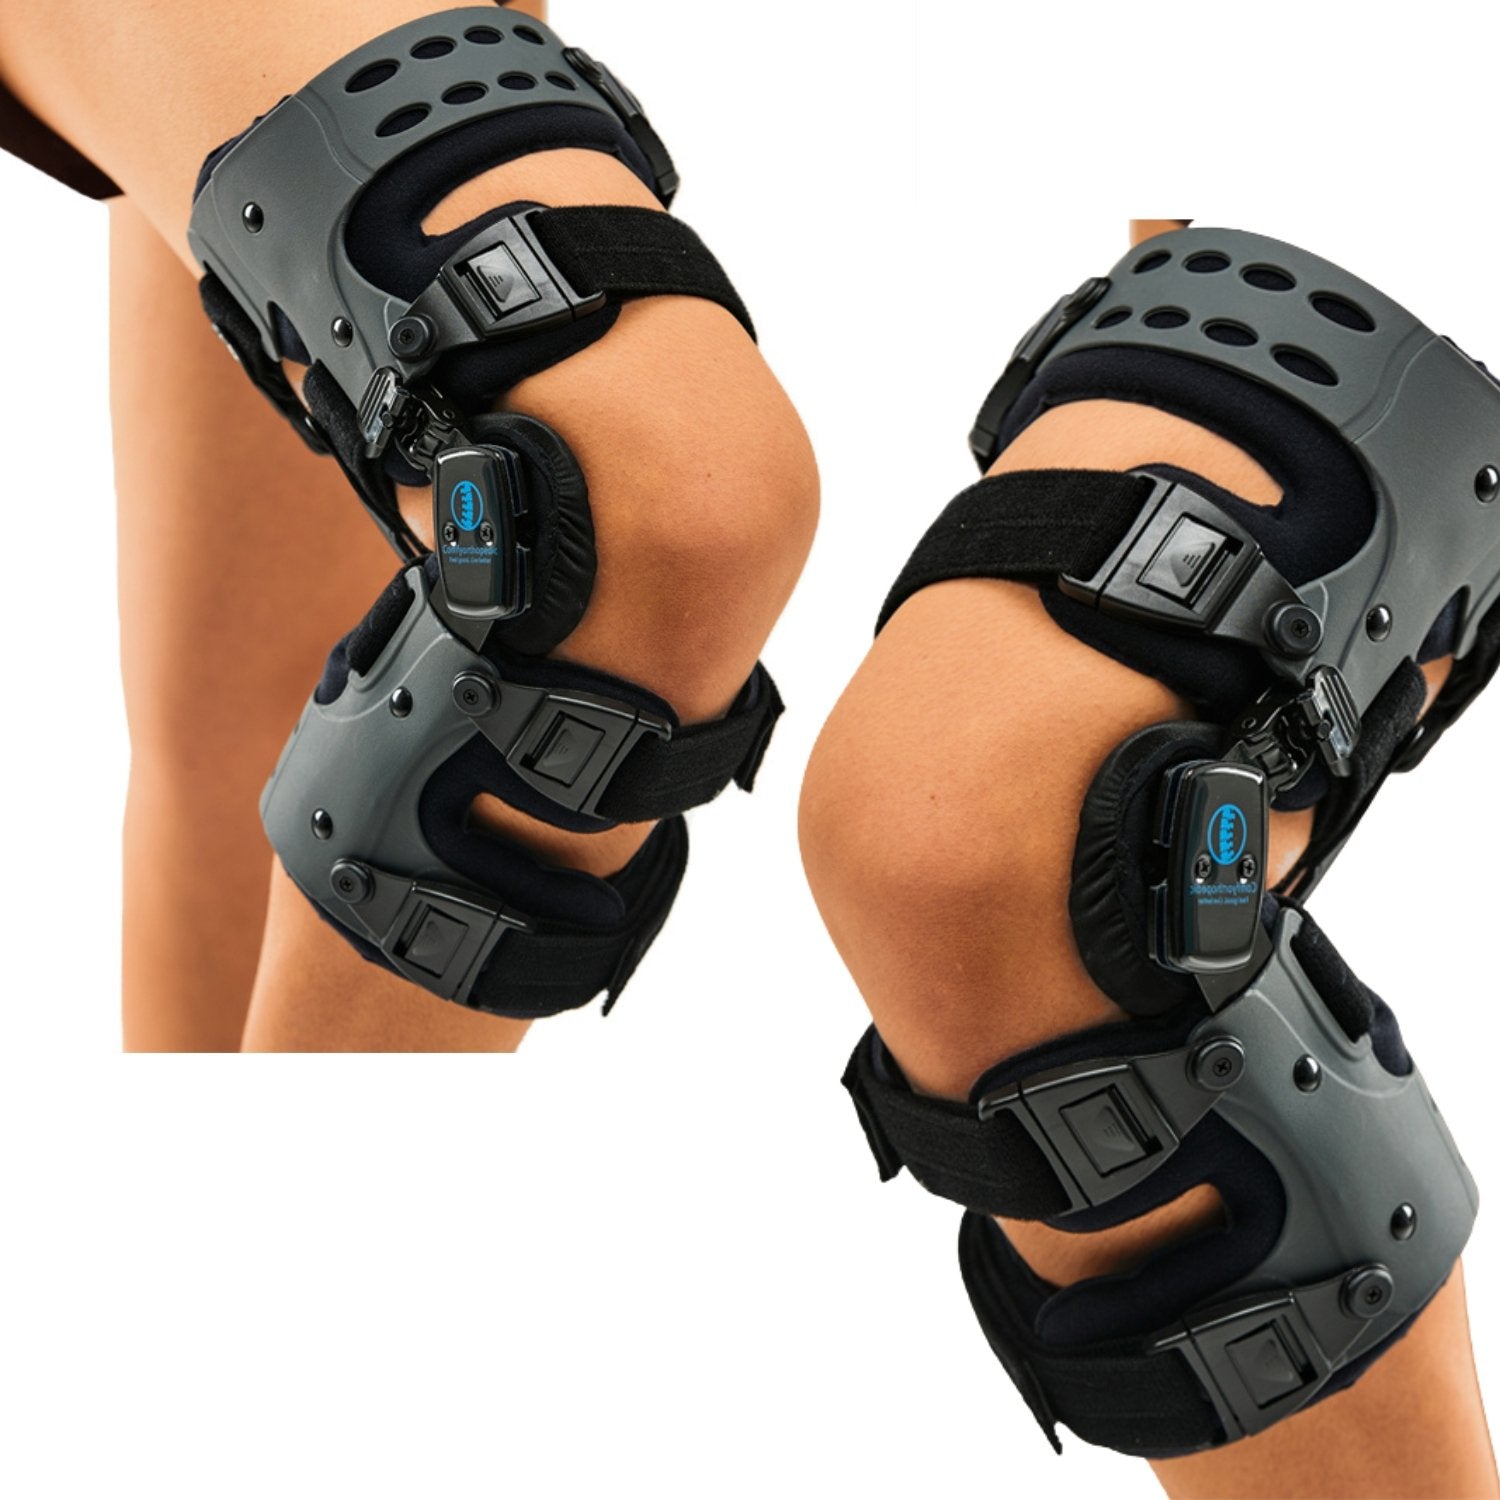 http://comfyorthopedic.com/cdn/shop/products/oa-unloader-knee-brace-support-lateralmedial-black-with-built-in-hex-key-l1851l1843-283854.jpg?v=1656692040